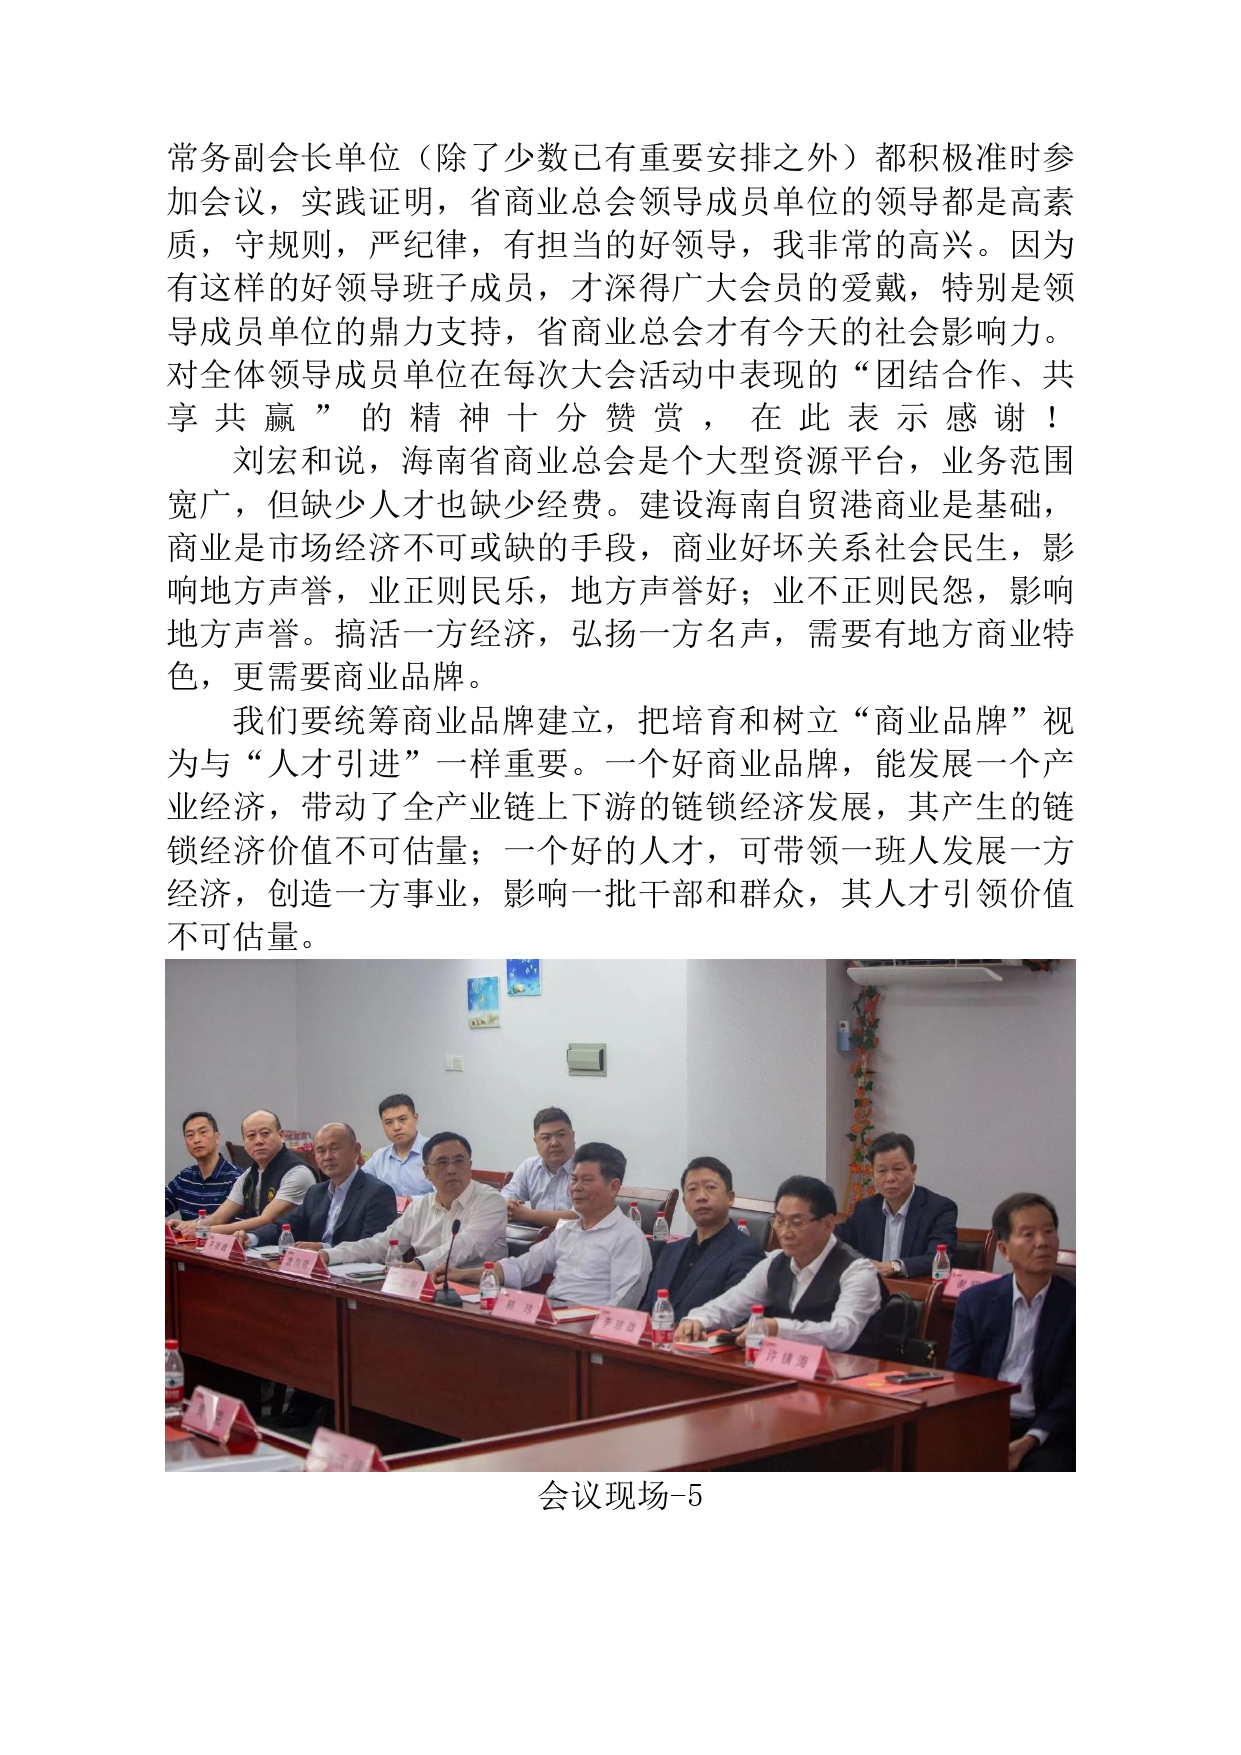 海南省商业总会第五届二次全省代表大会拟于12月12日在海口召开。_page-0003.jpg